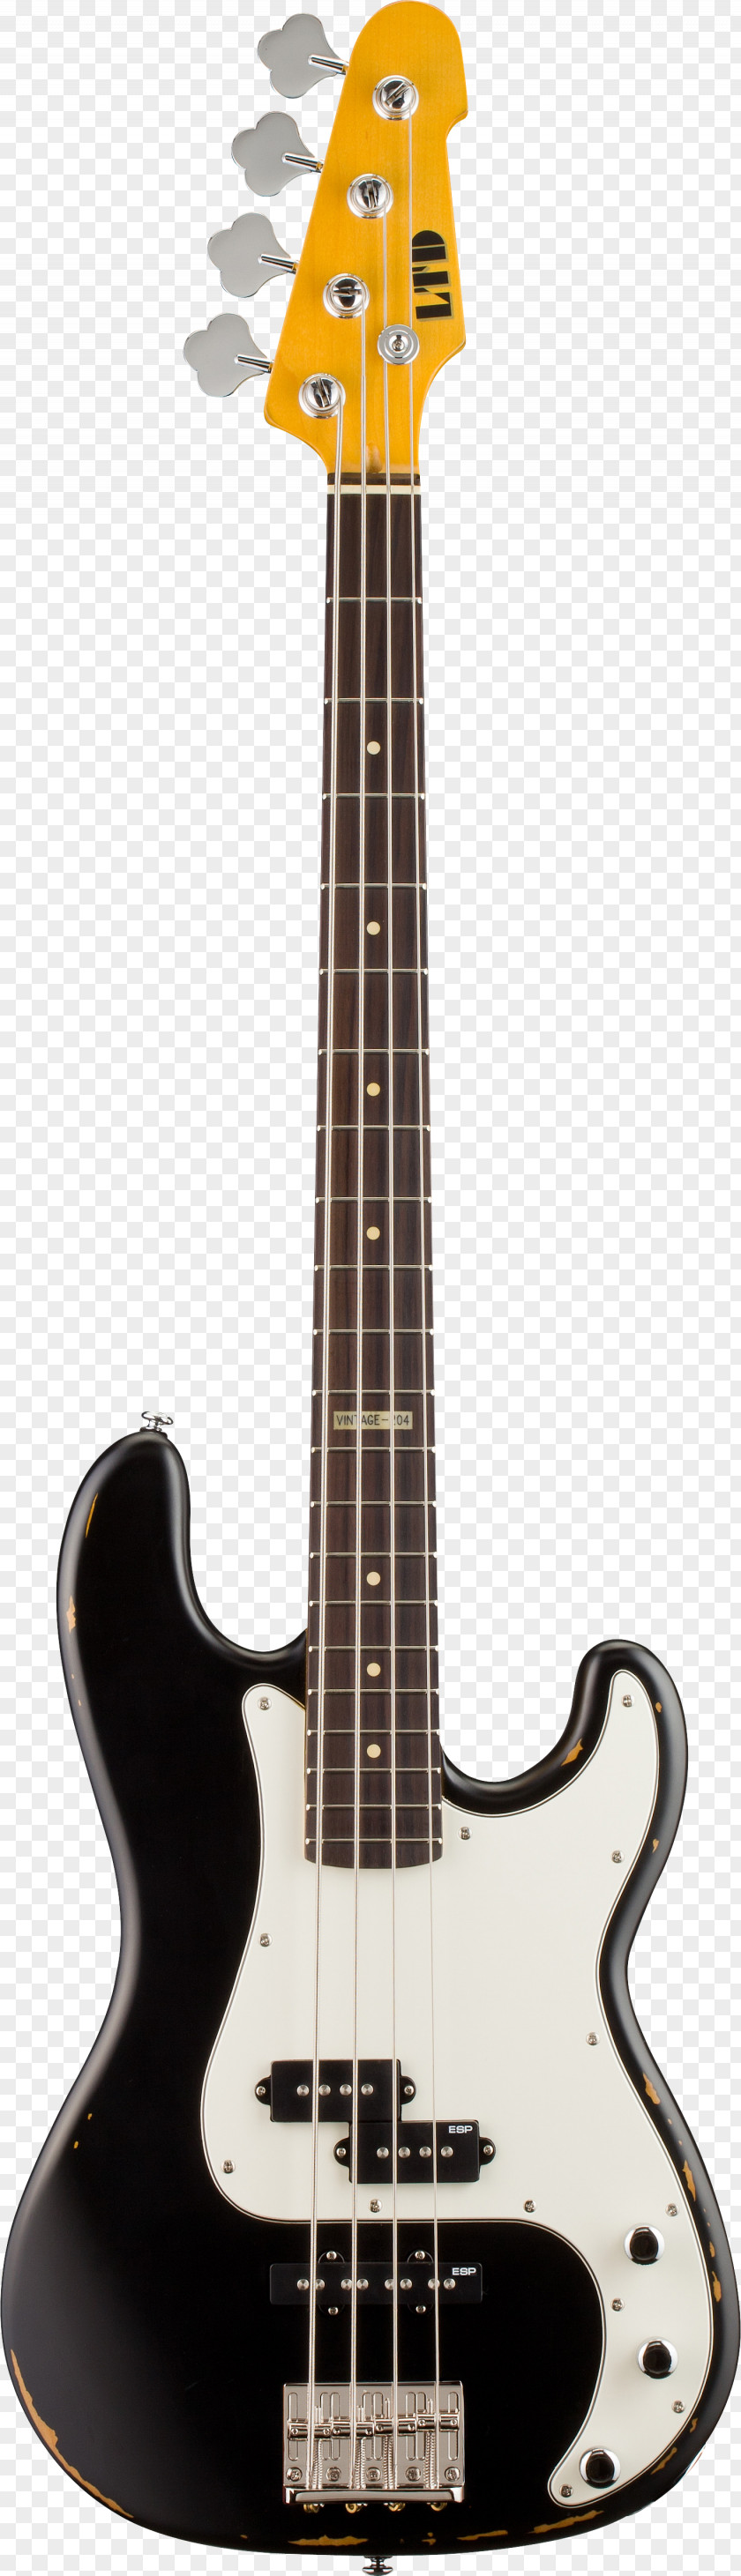 Electric Guitar Fender Precision Bass Mustang Jaguar PNG